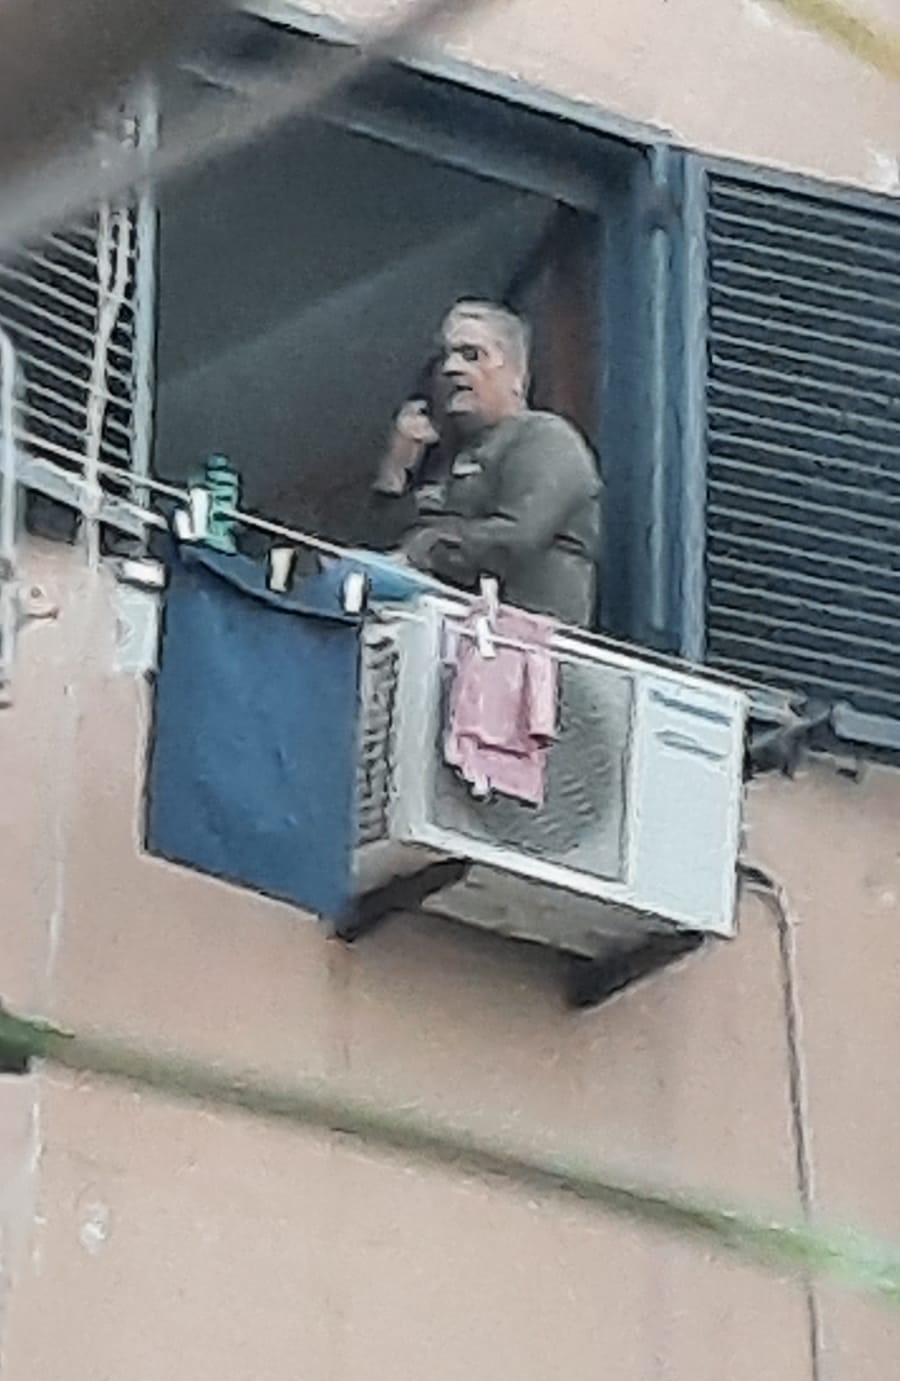 Napoli: Fsp Polizia, barricato in casa uccide moglie e si suicida